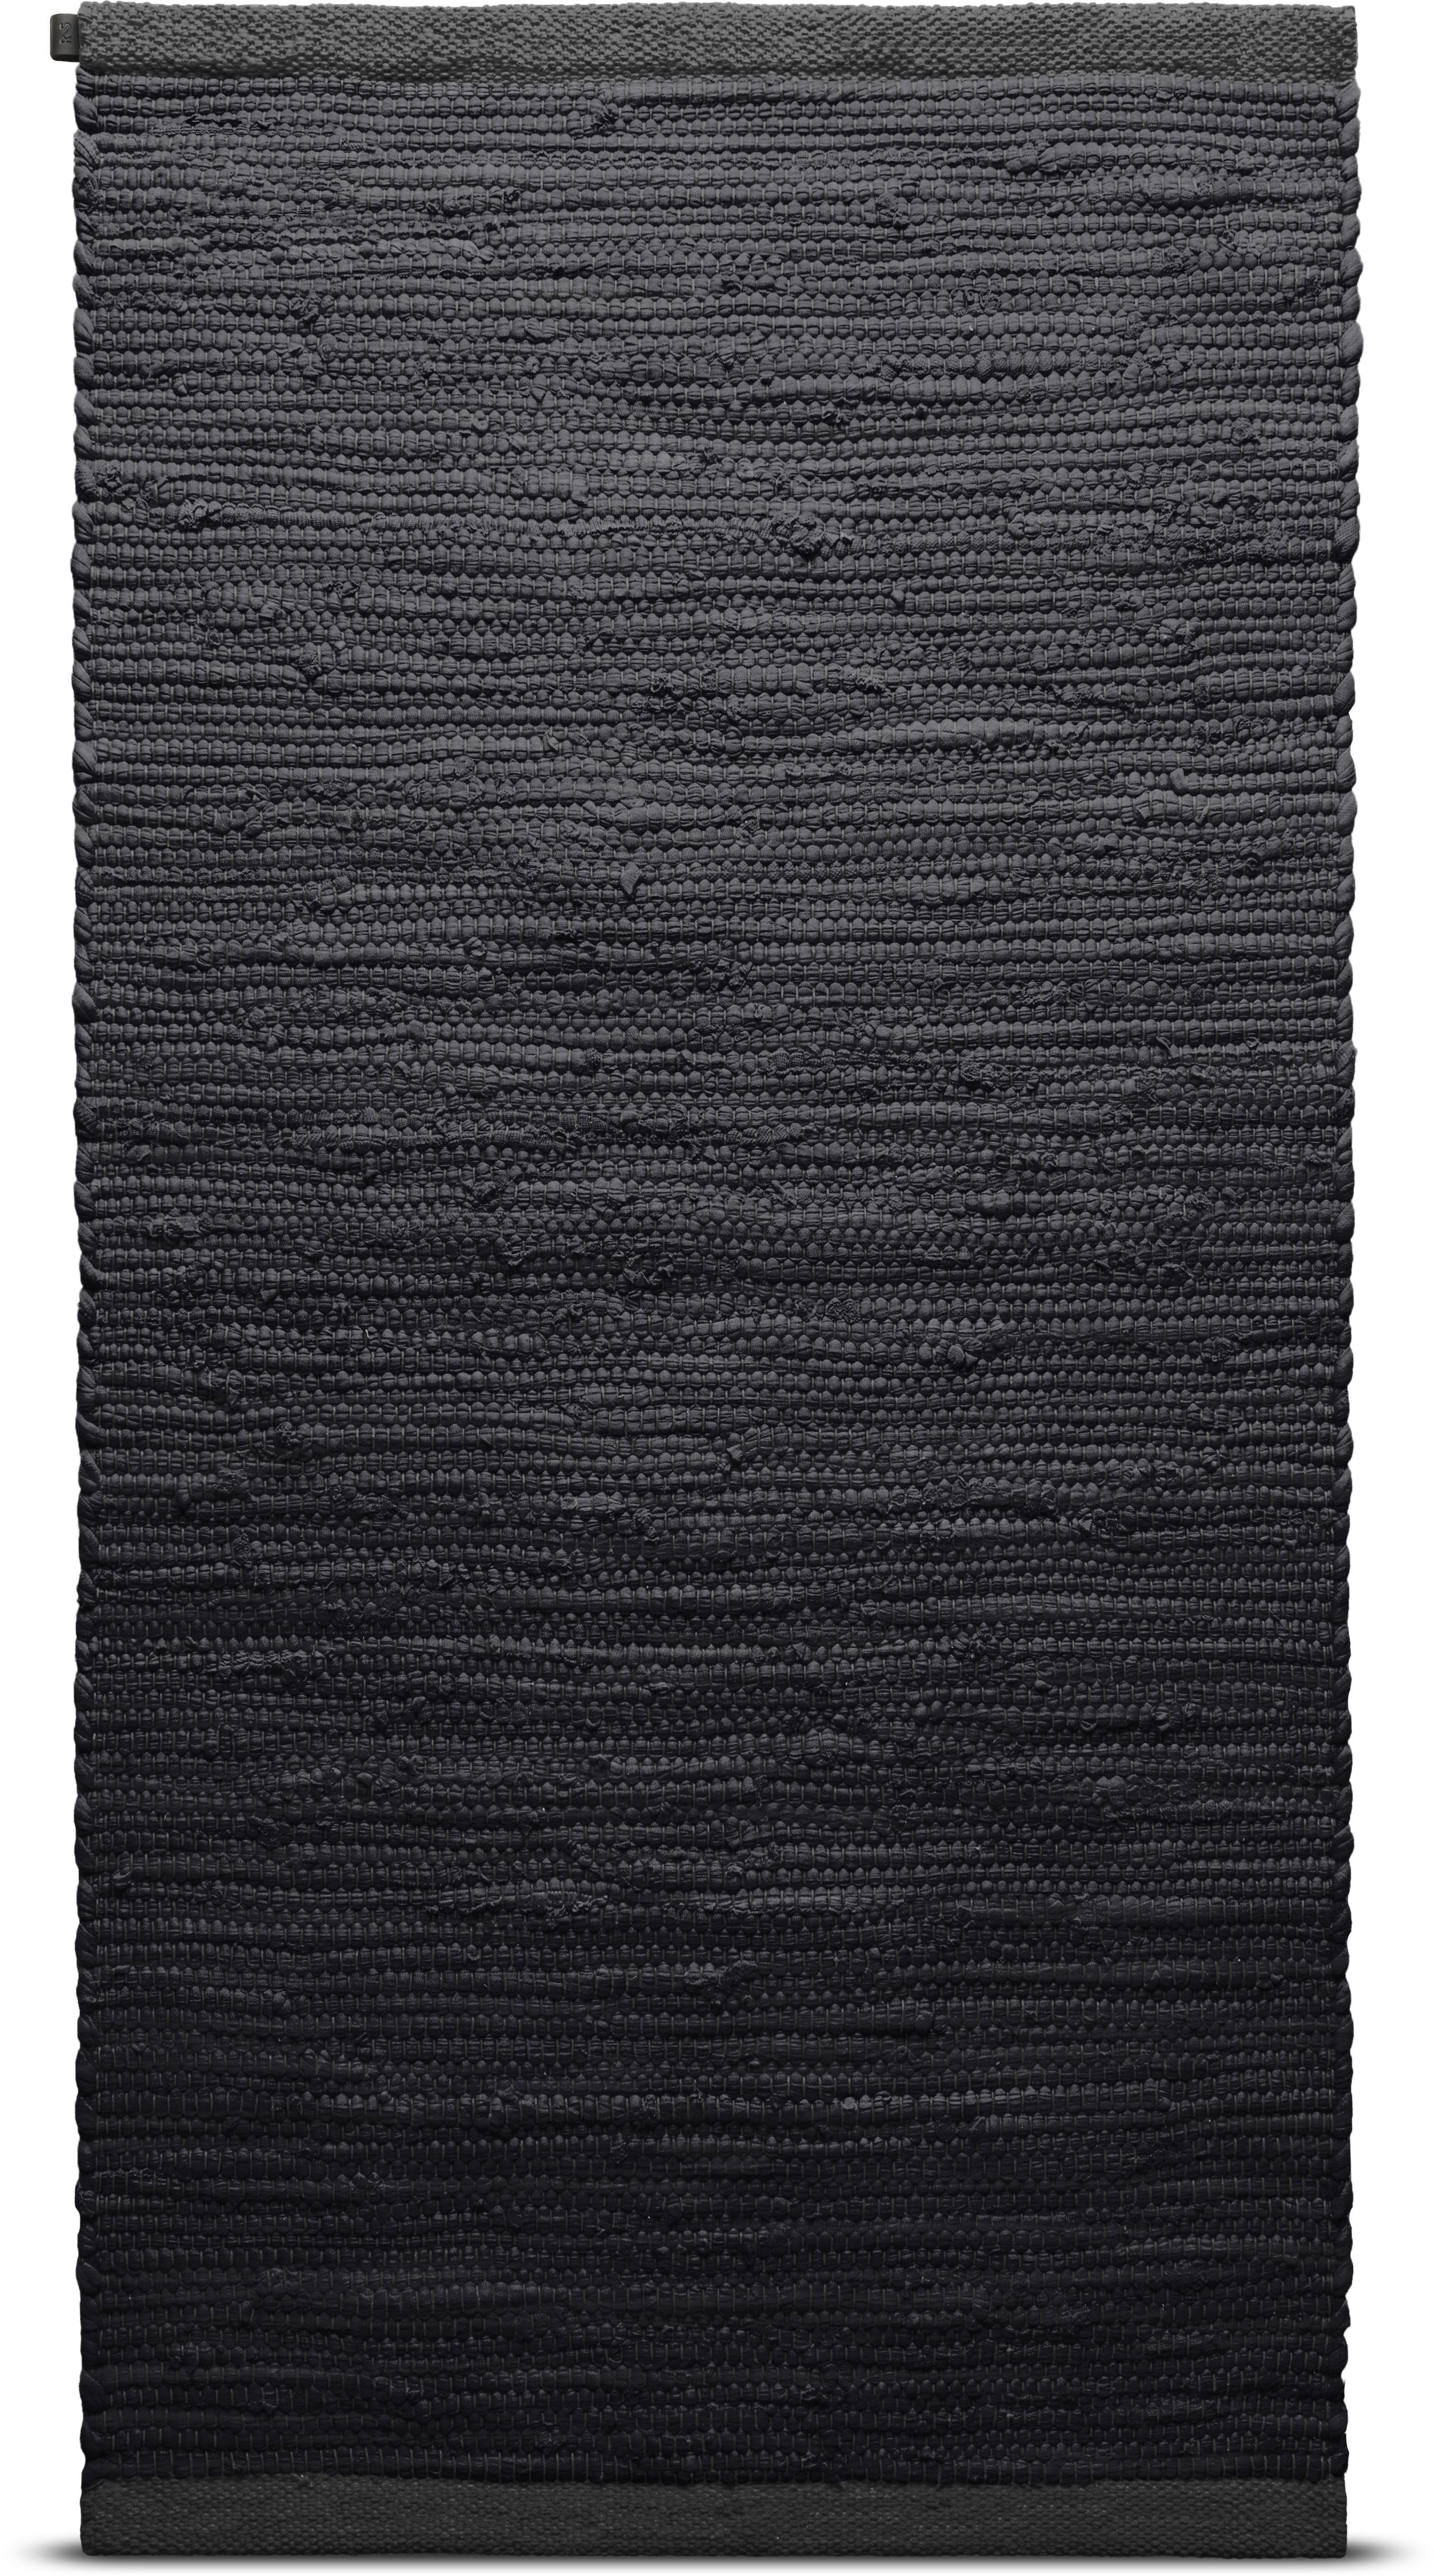 Tappeto in cotone solido 65 x 135 cm, carbone